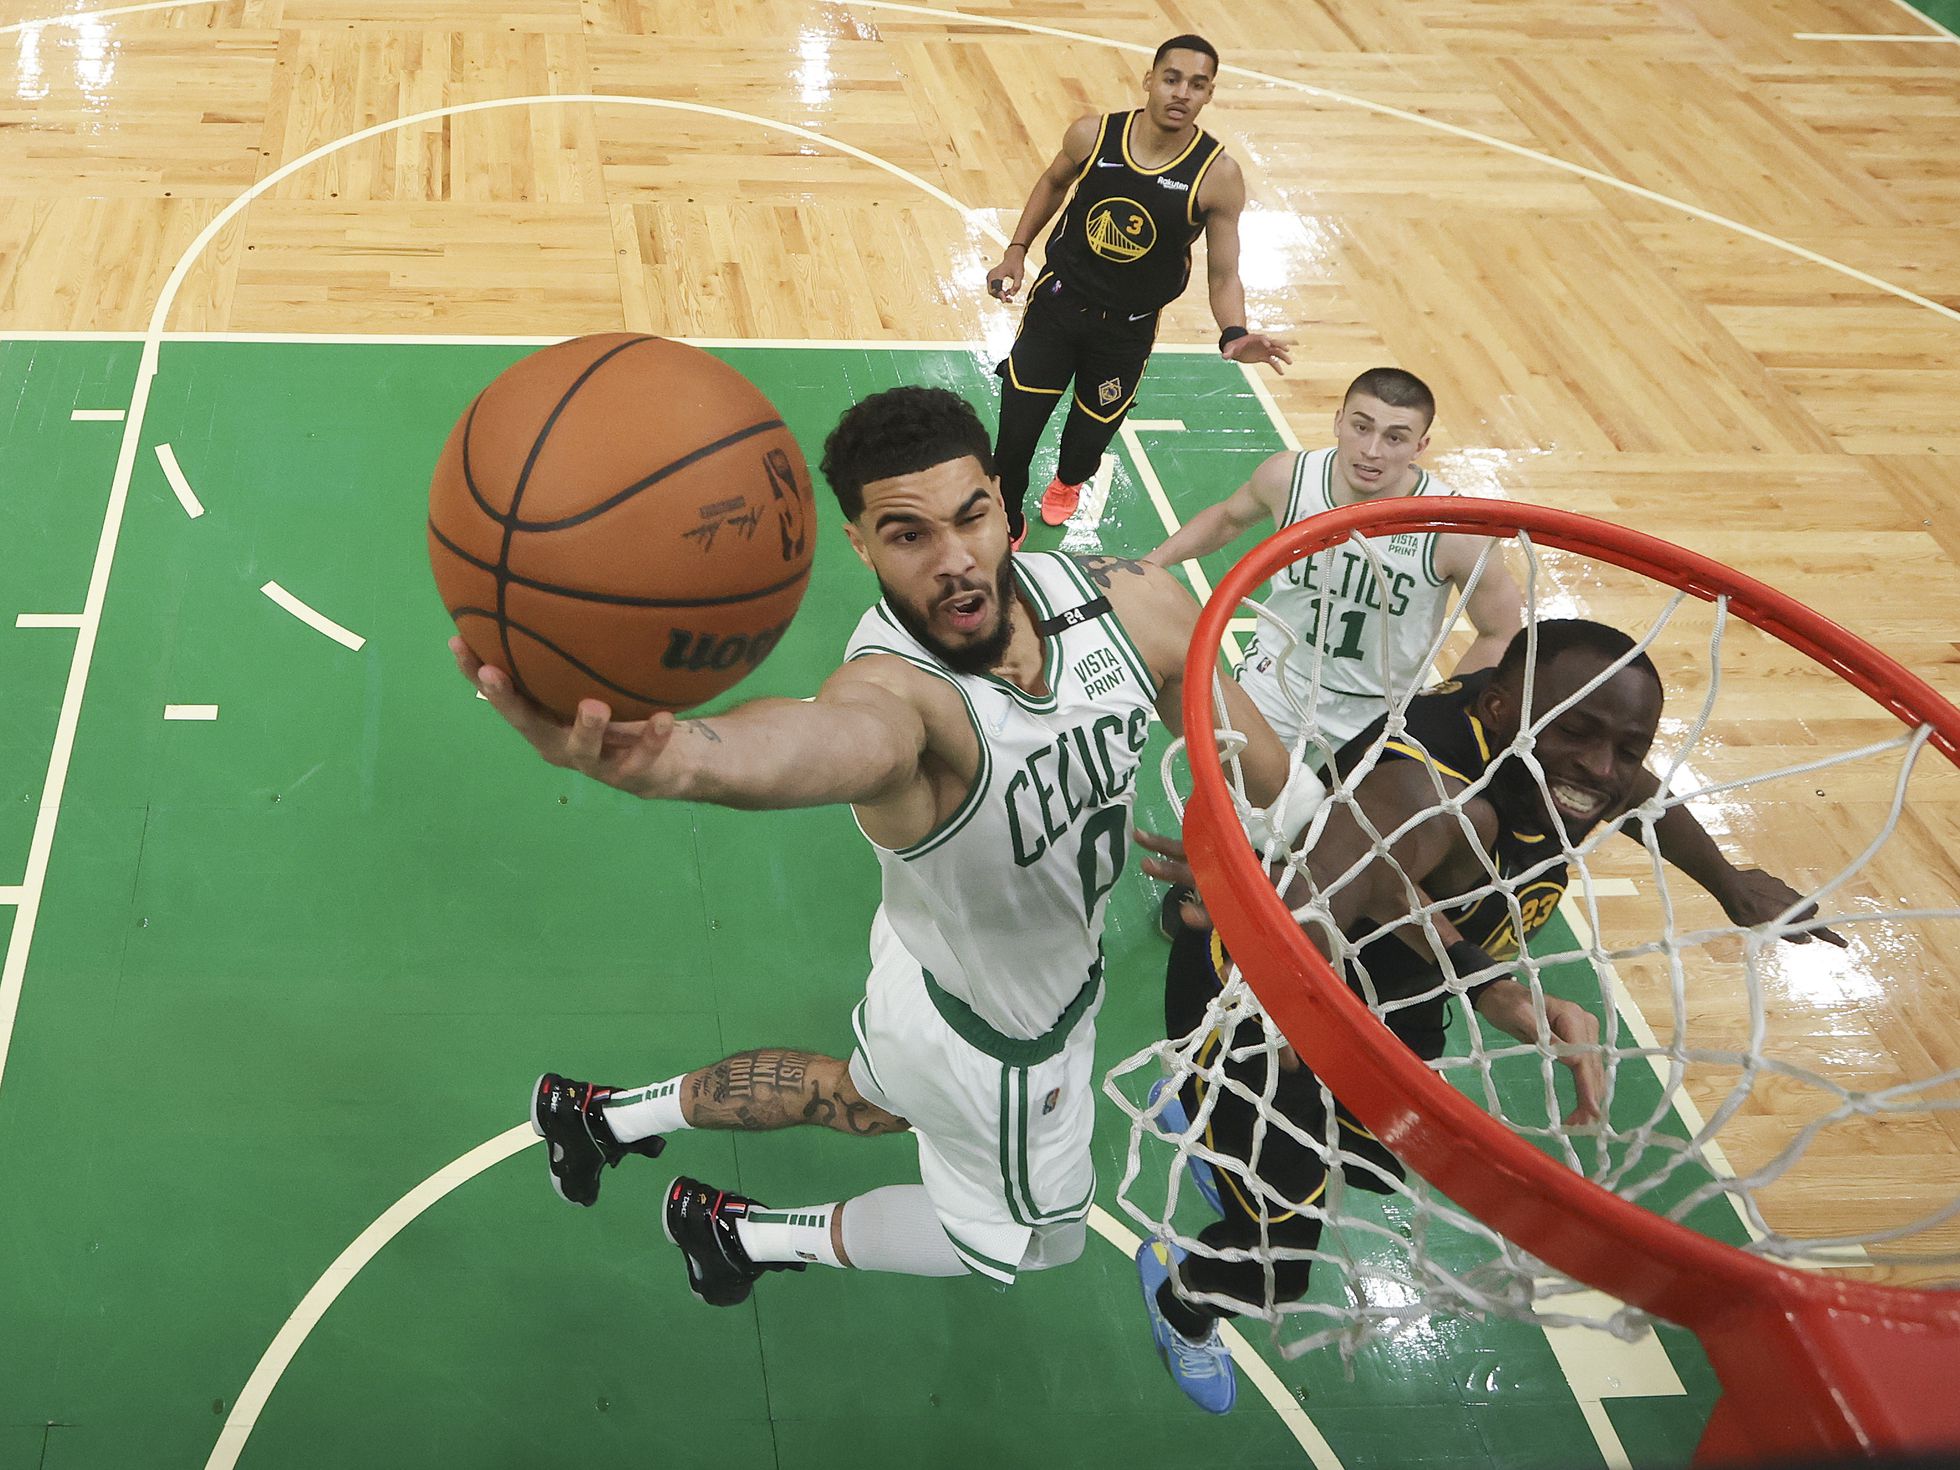 Finales NBA 2022 Warriors y Celtics: calendario de partidos y resultados | Deportes | EL PAÍS